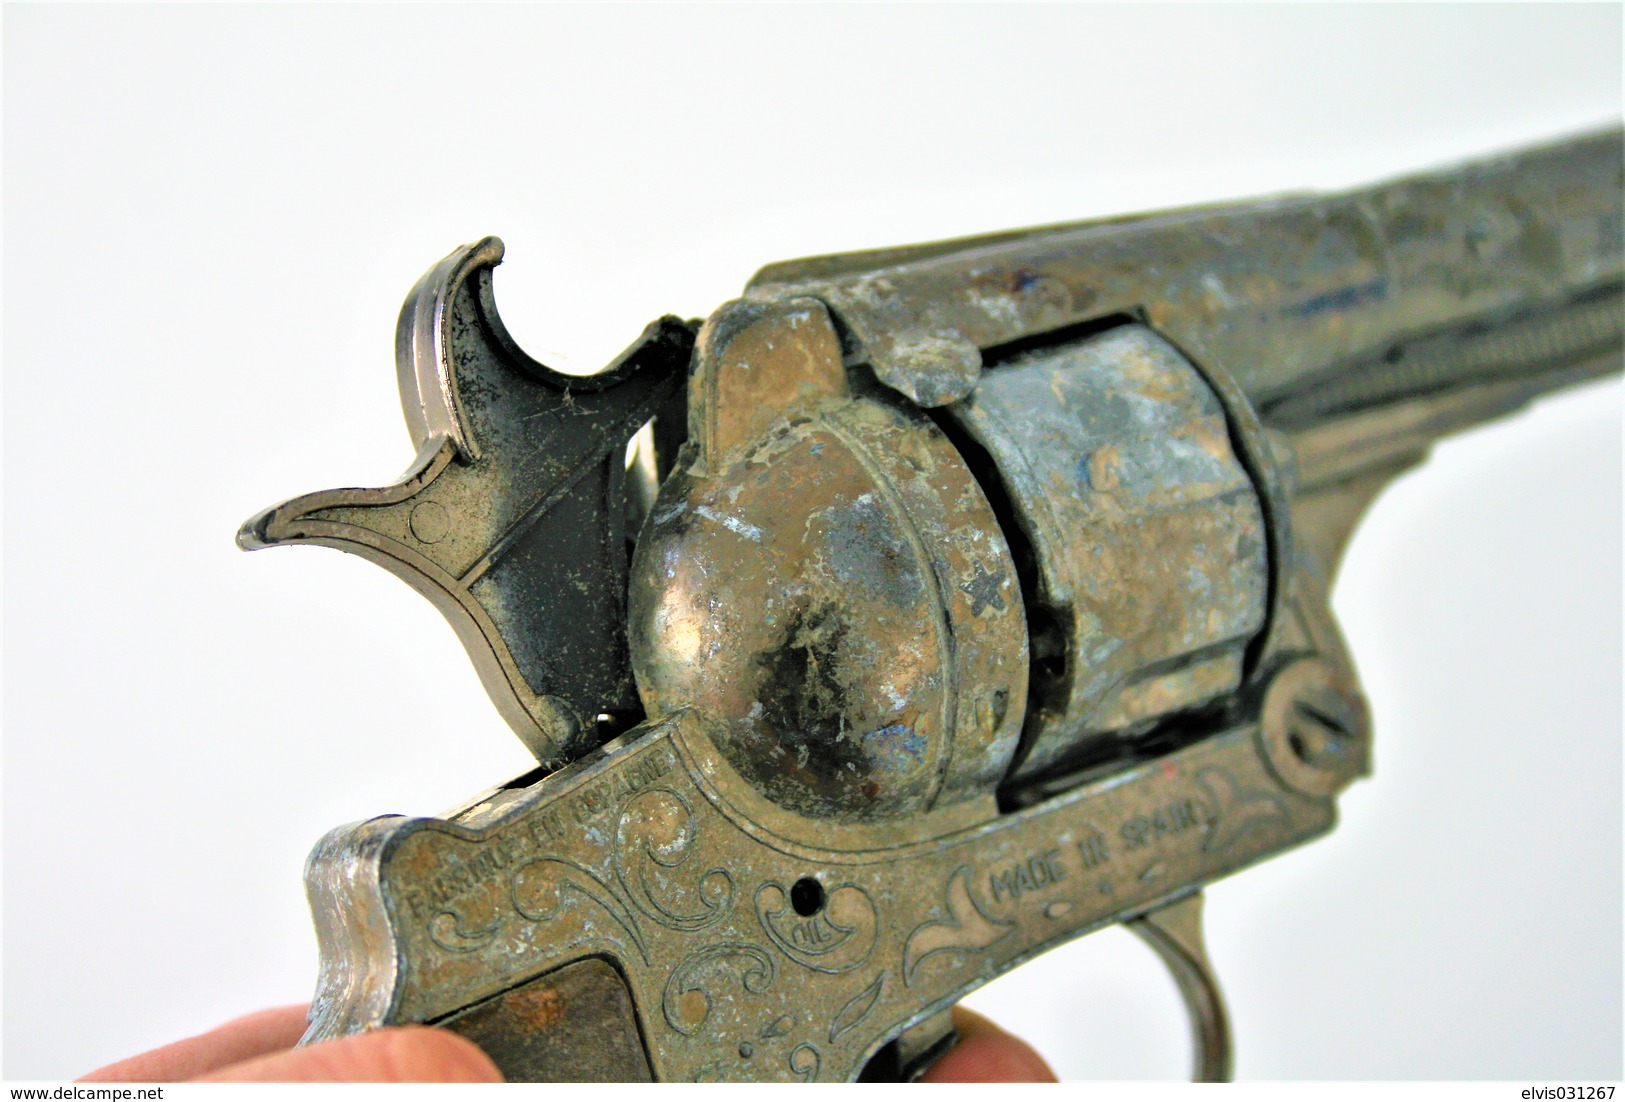 Vintage TOY GUN : GONHER NO. 122 - L=24.5cm - 19??s - Spain - keywords : Cap Gun - Cork gun - Rifle - Revolver - Pistol